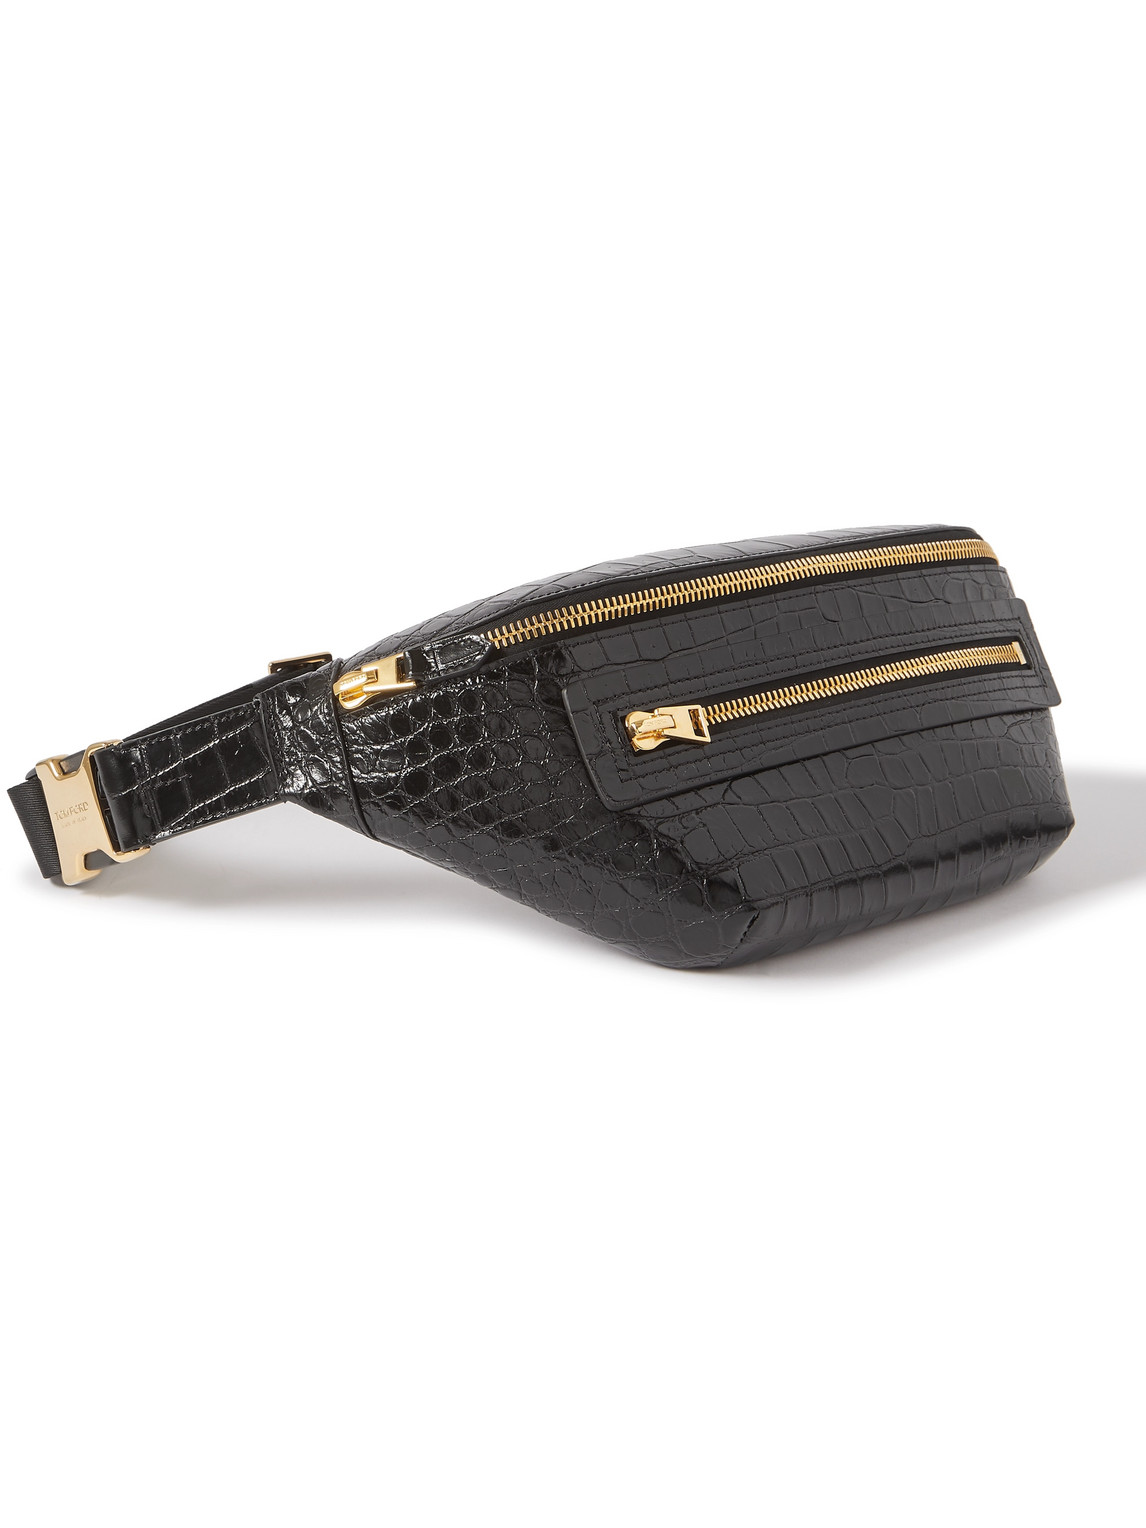 TOM FORD - Buckley Croc-Effect Leather Belt Bag - Men - Black for Men